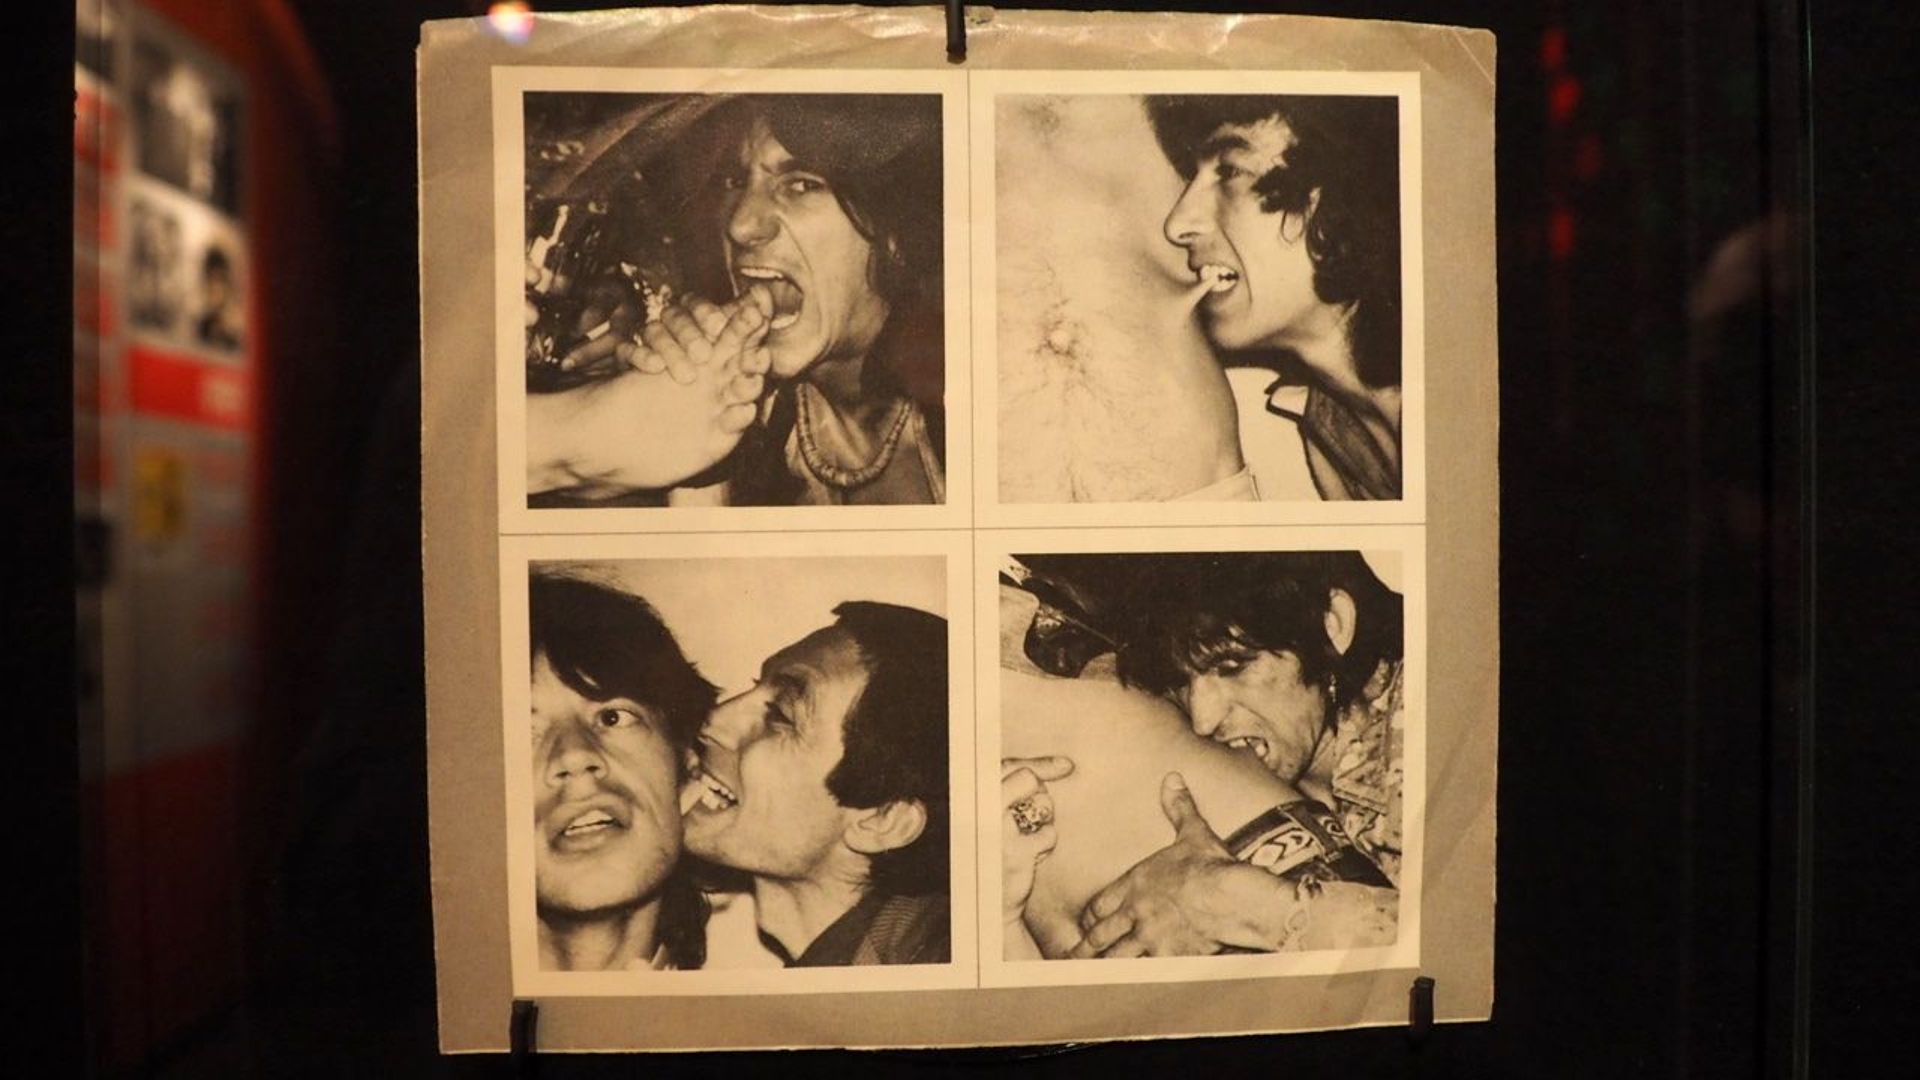 Love You Live , 1977 - Pochette de 45t pour The Rolling Stones. Lithographie offset. Coll.Paul Maréchal, Montréal